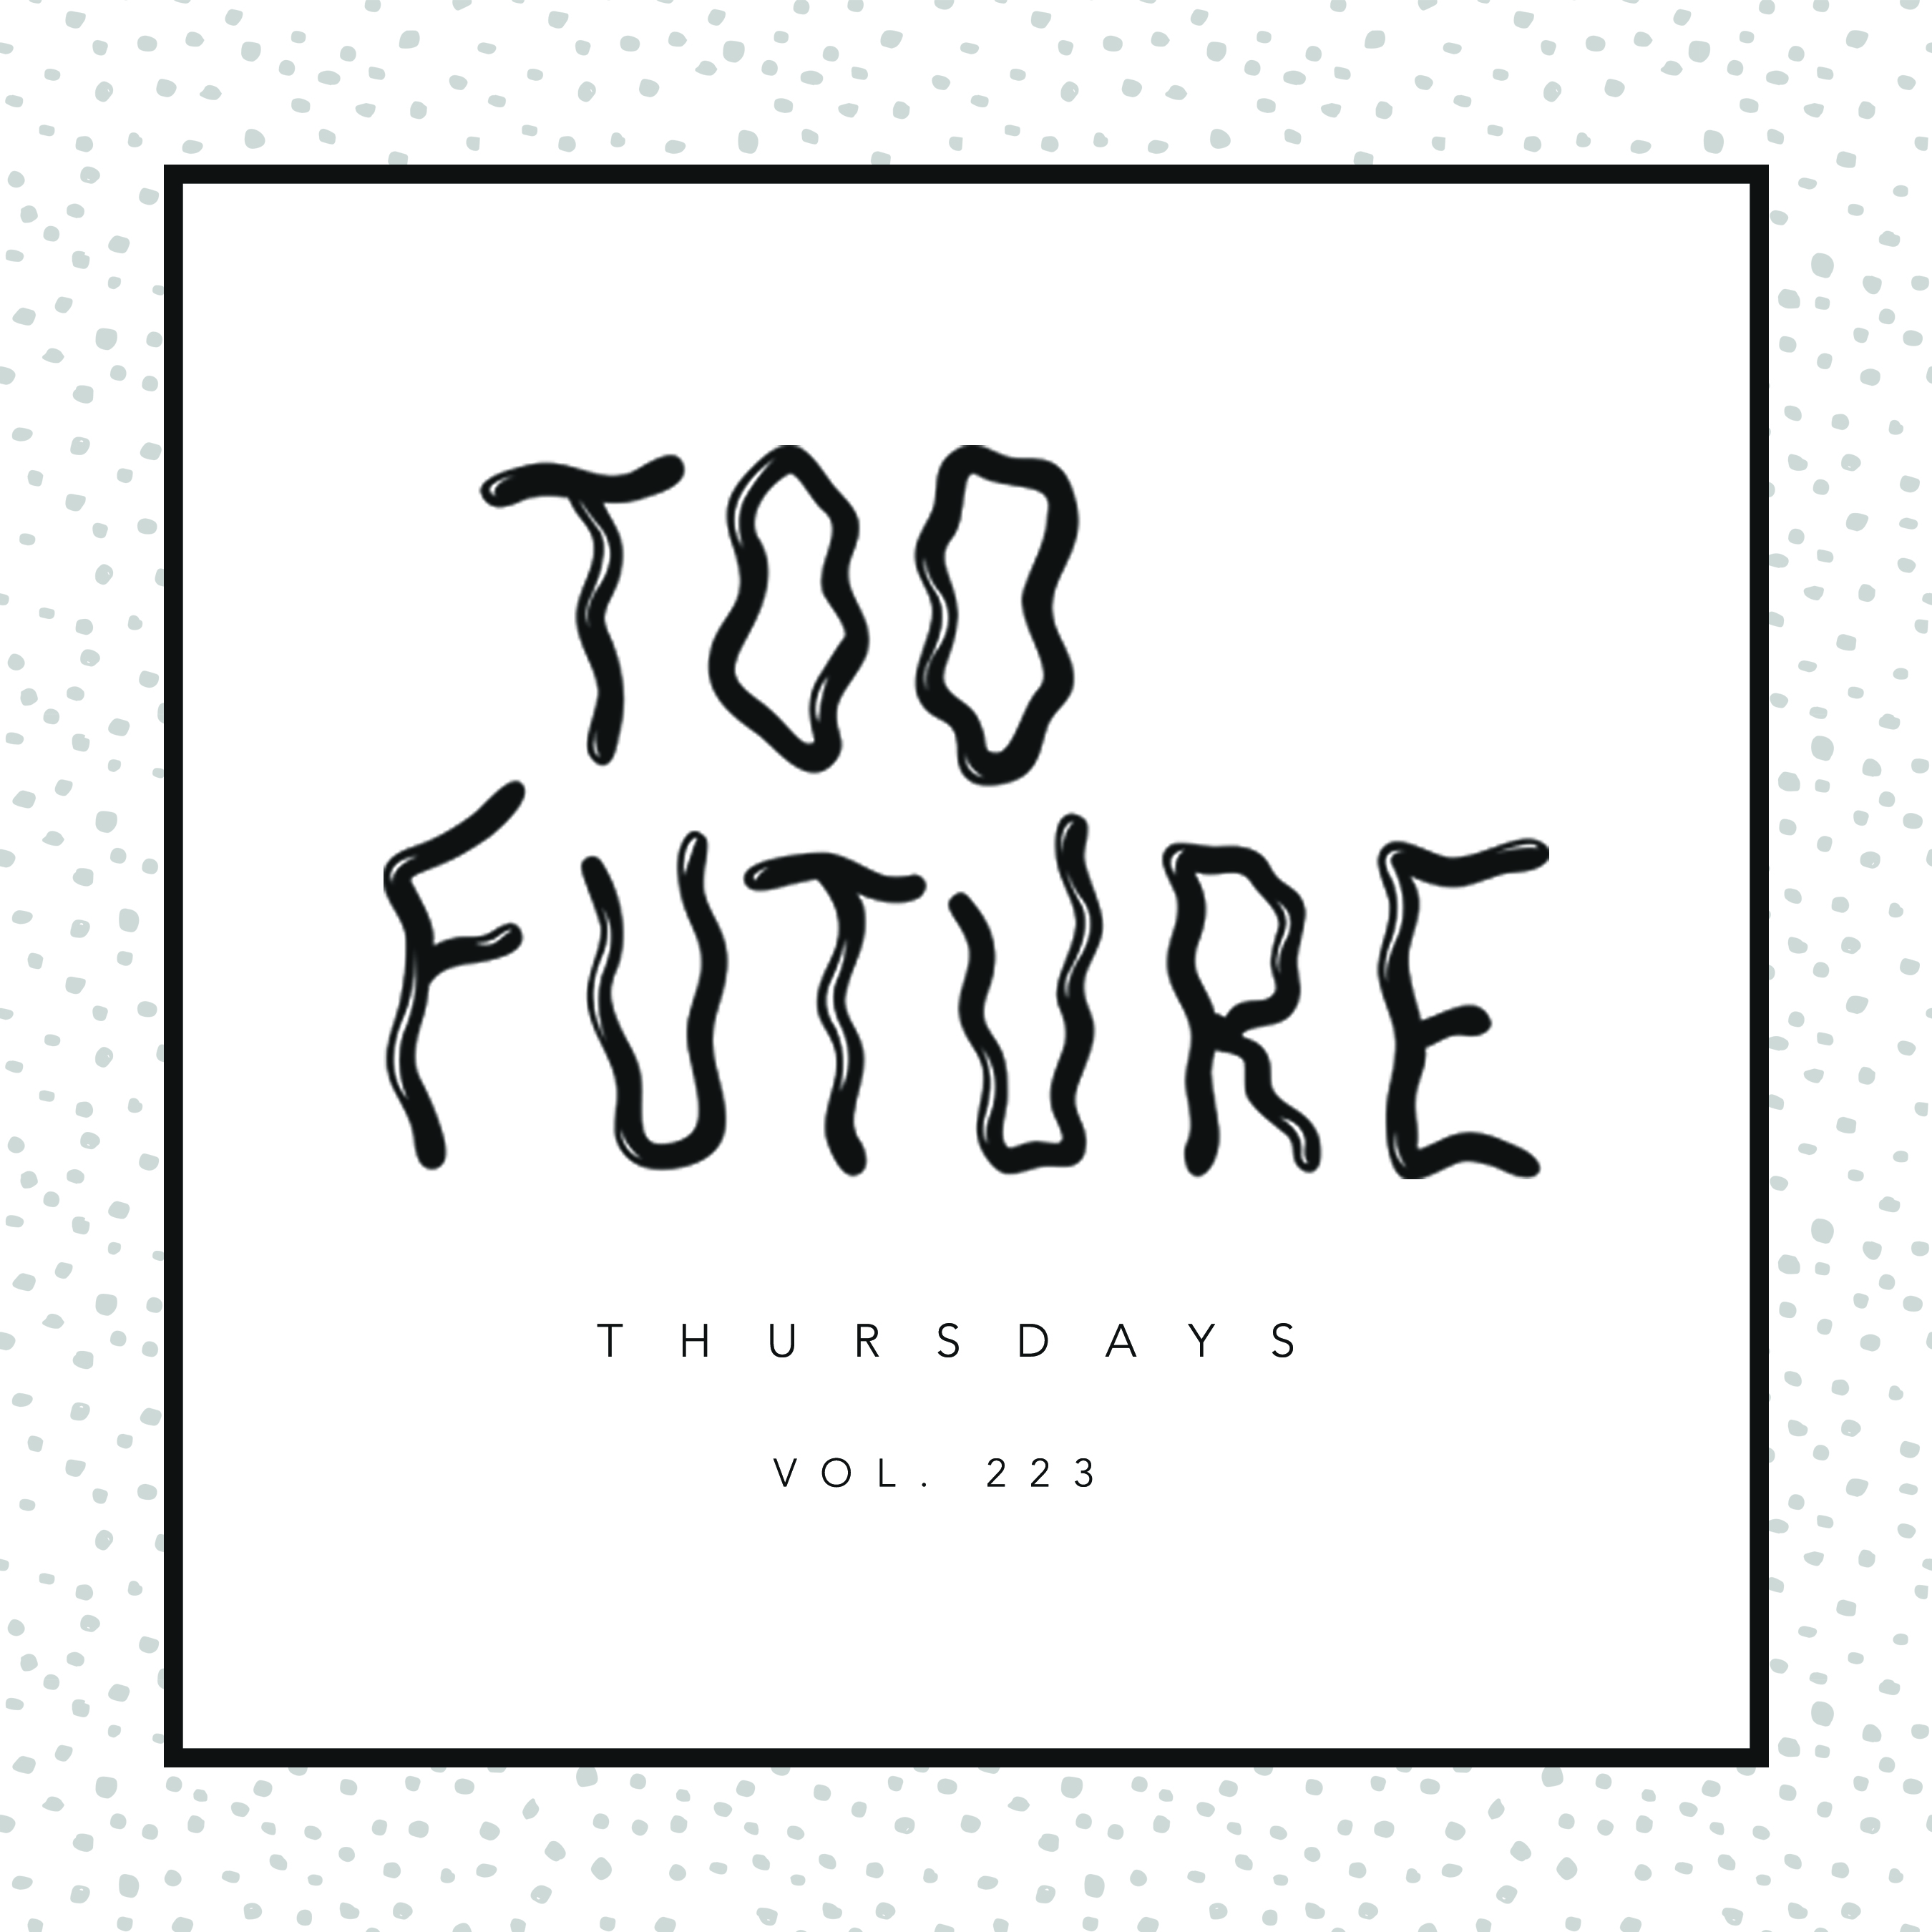 too-future-thursdays-vol-223